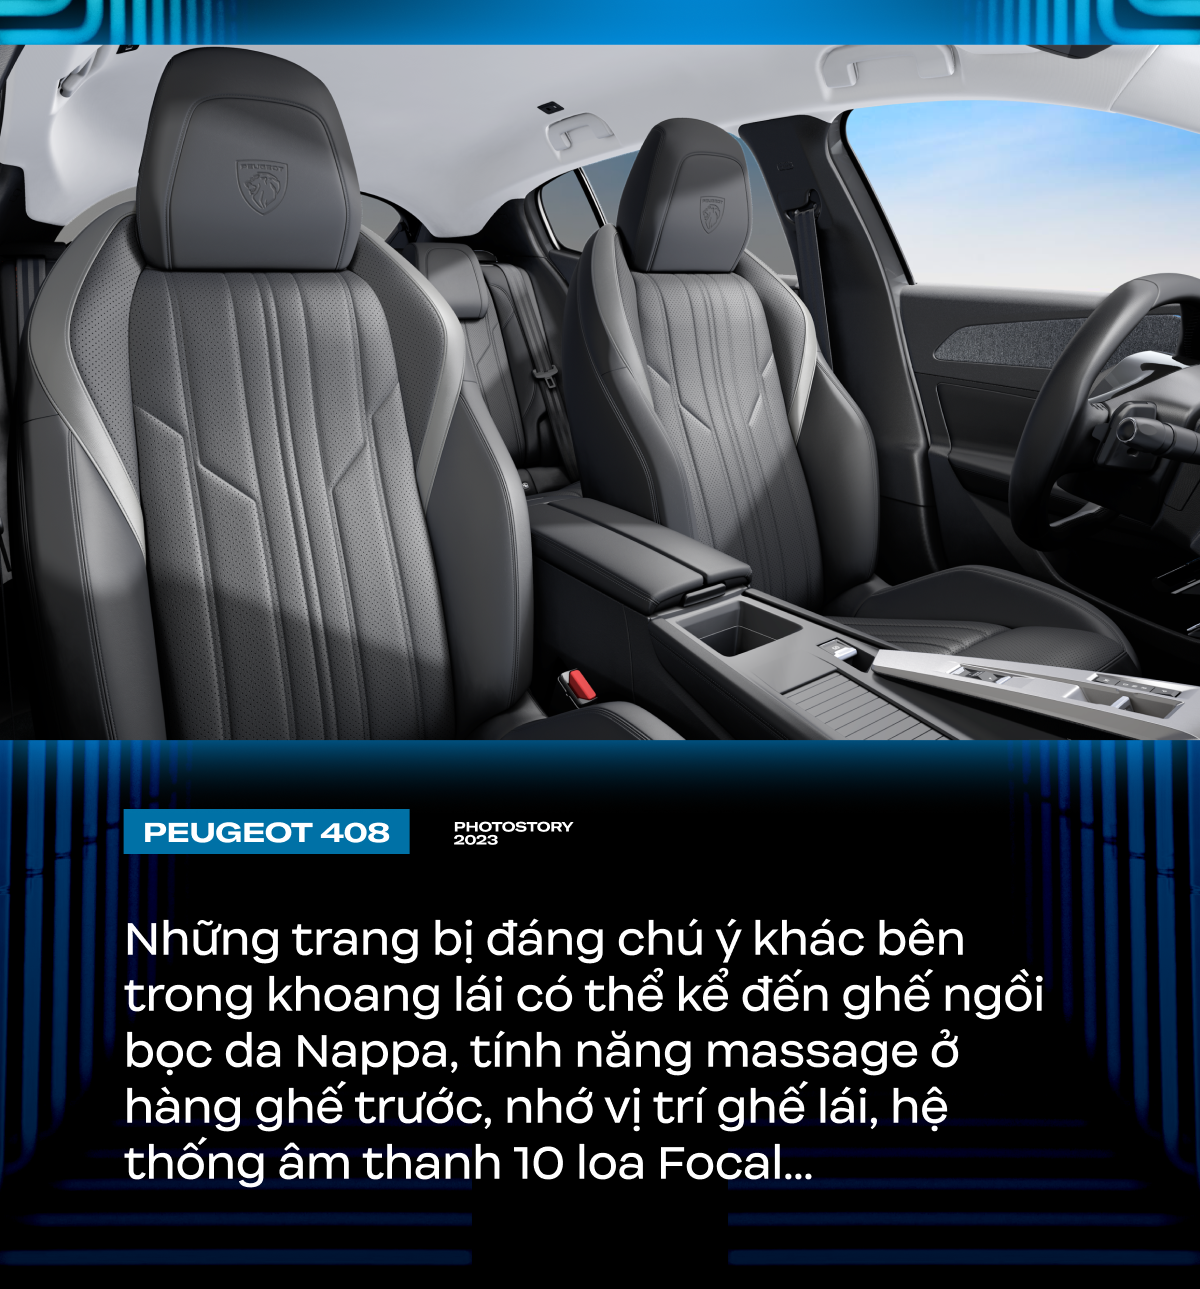 Peugeot 408 - Lựa chọn khác biệt cho người Việt ở phân khúc SUV hạng C - Ảnh 7.